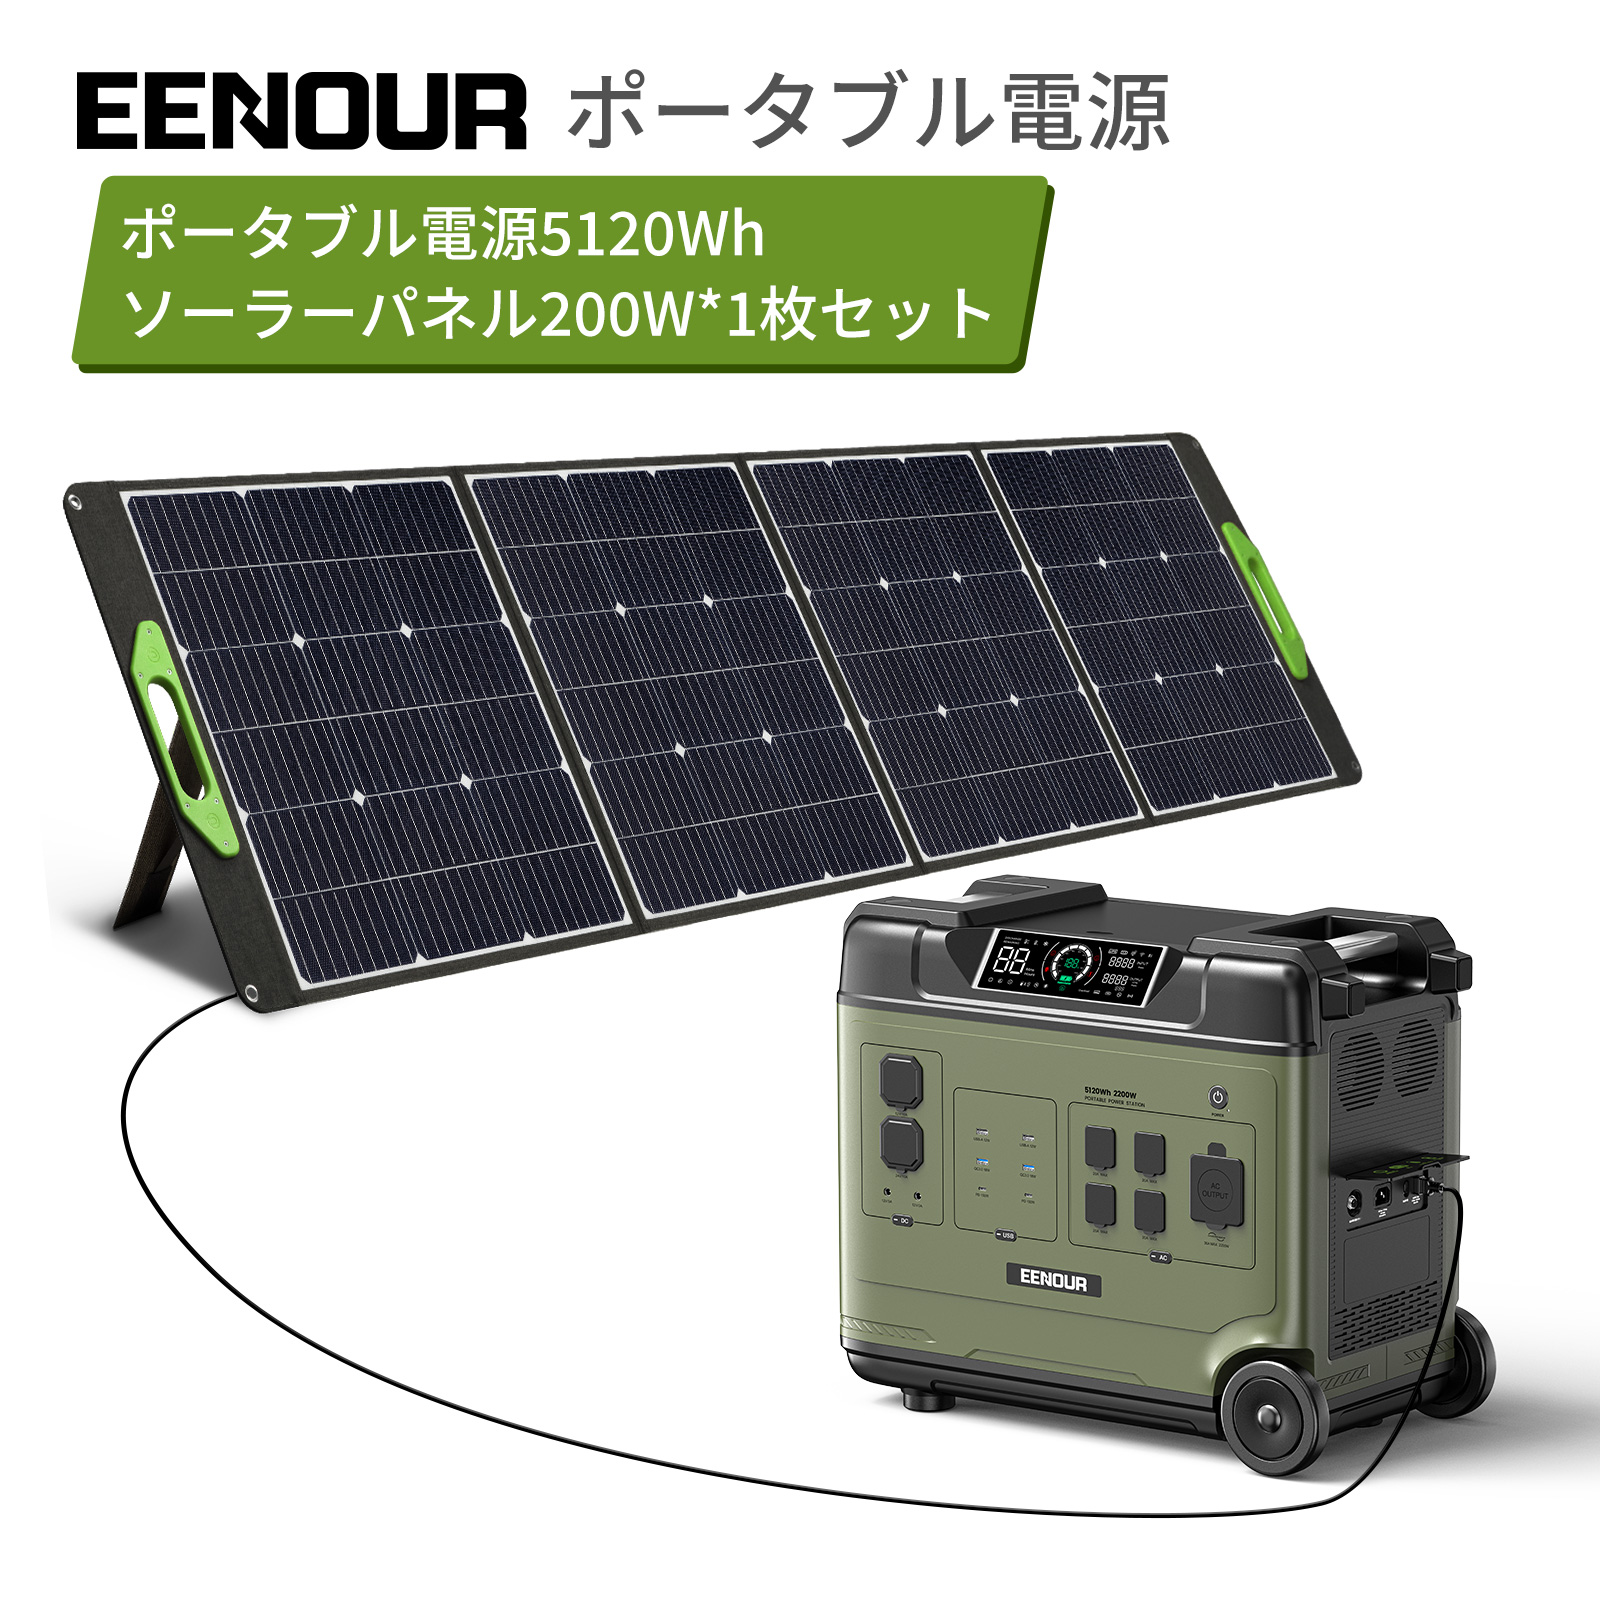 楽天市場】【2点/3点セット】EENOUR P5000 ポータブル電源 5120Wh